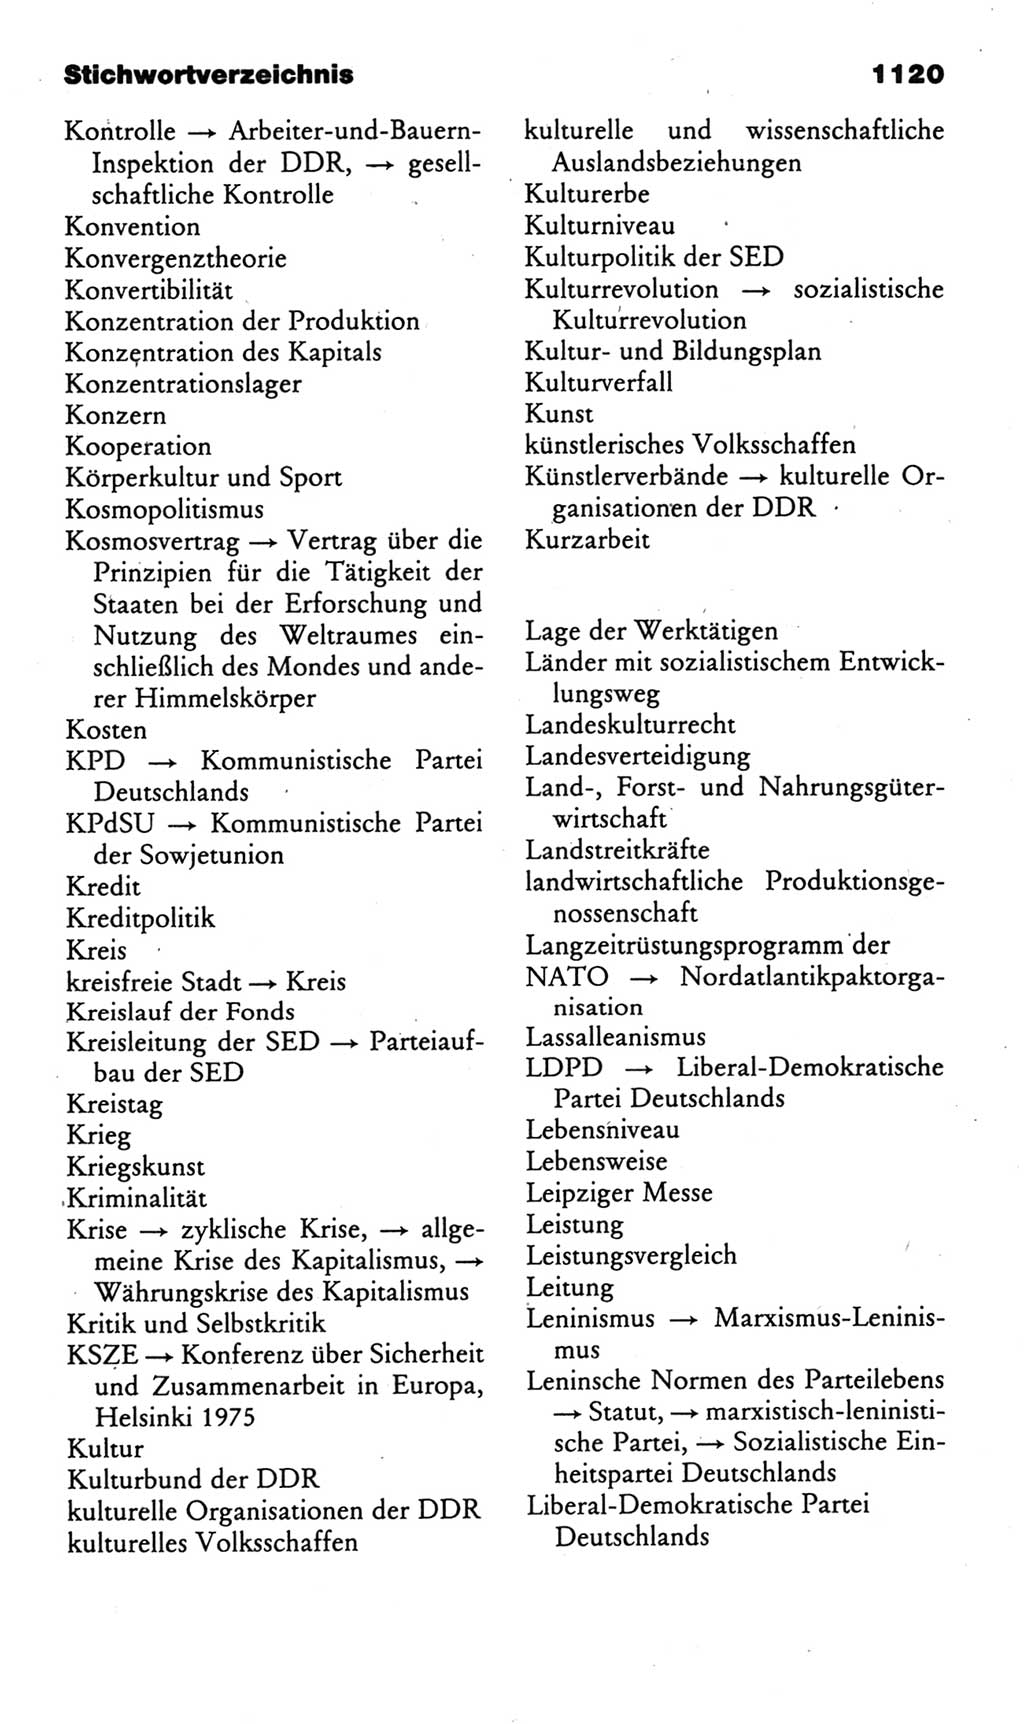 Kleines politisches Wörterbuch [Deutsche Demokratische Republik (DDR)] 1985, Seite 1120 (Kl. pol. Wb. DDR 1985, S. 1120)